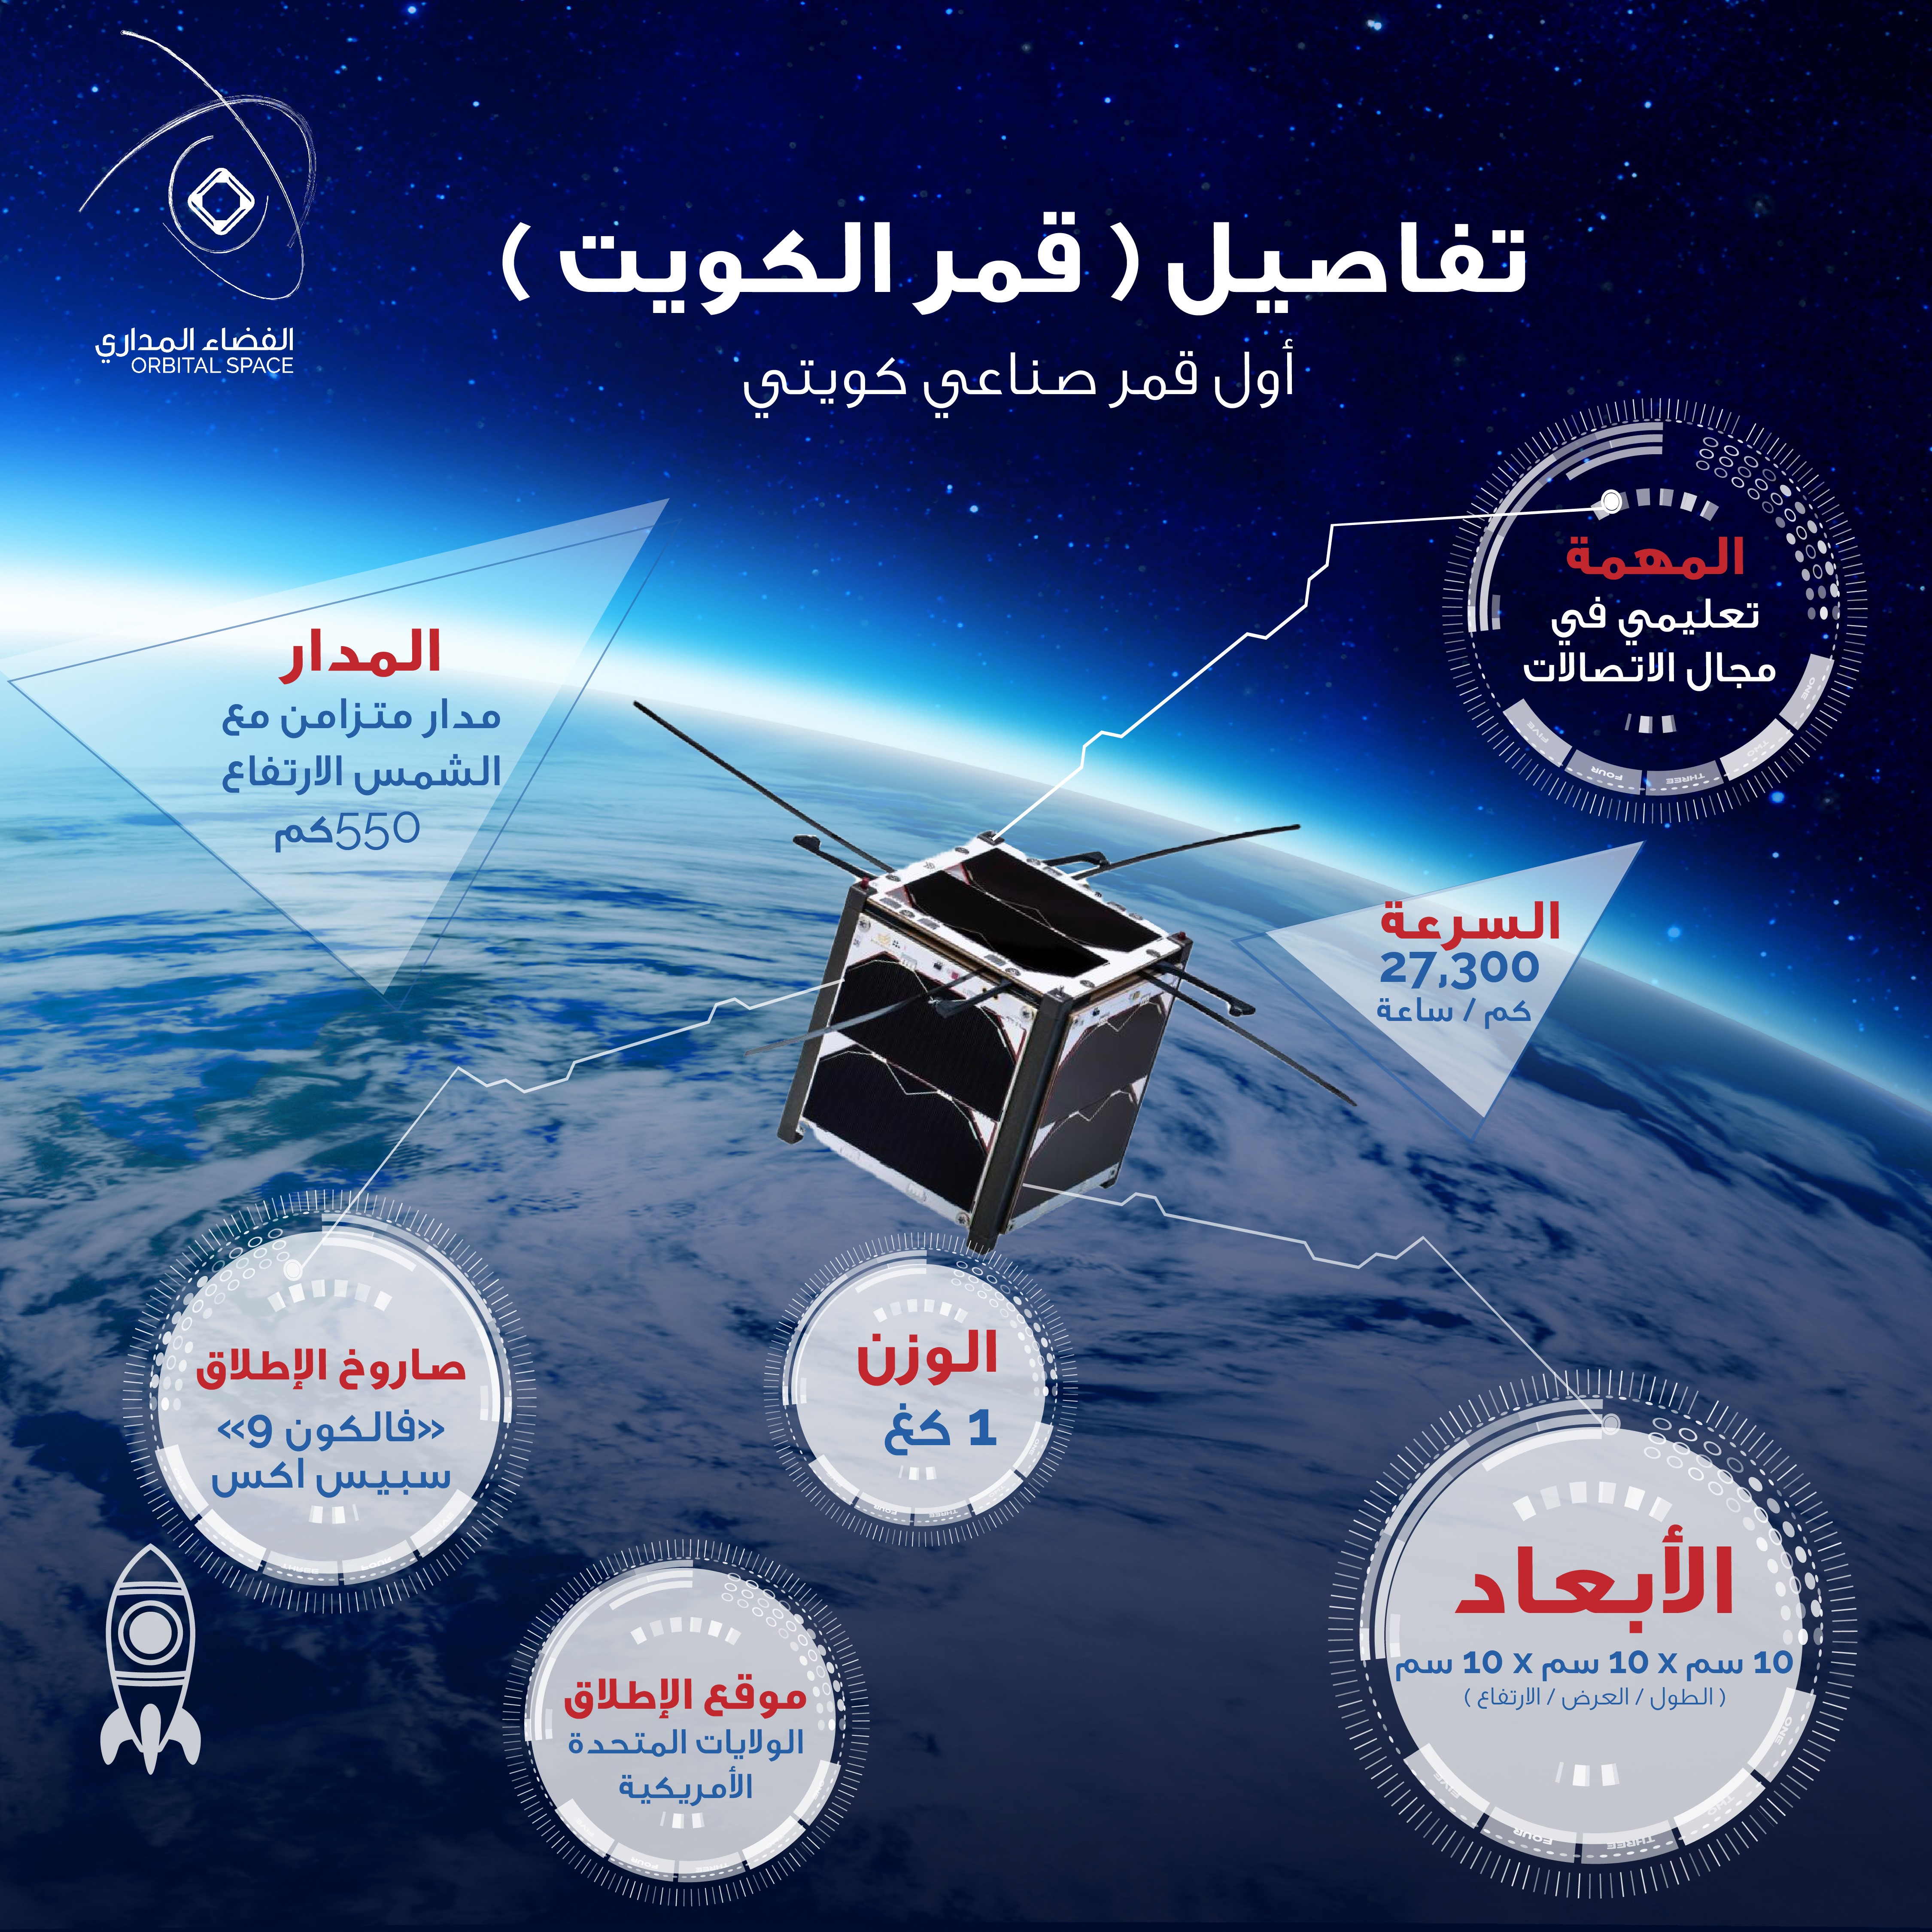 Kuwait's first Satellite (QMR-KWT)